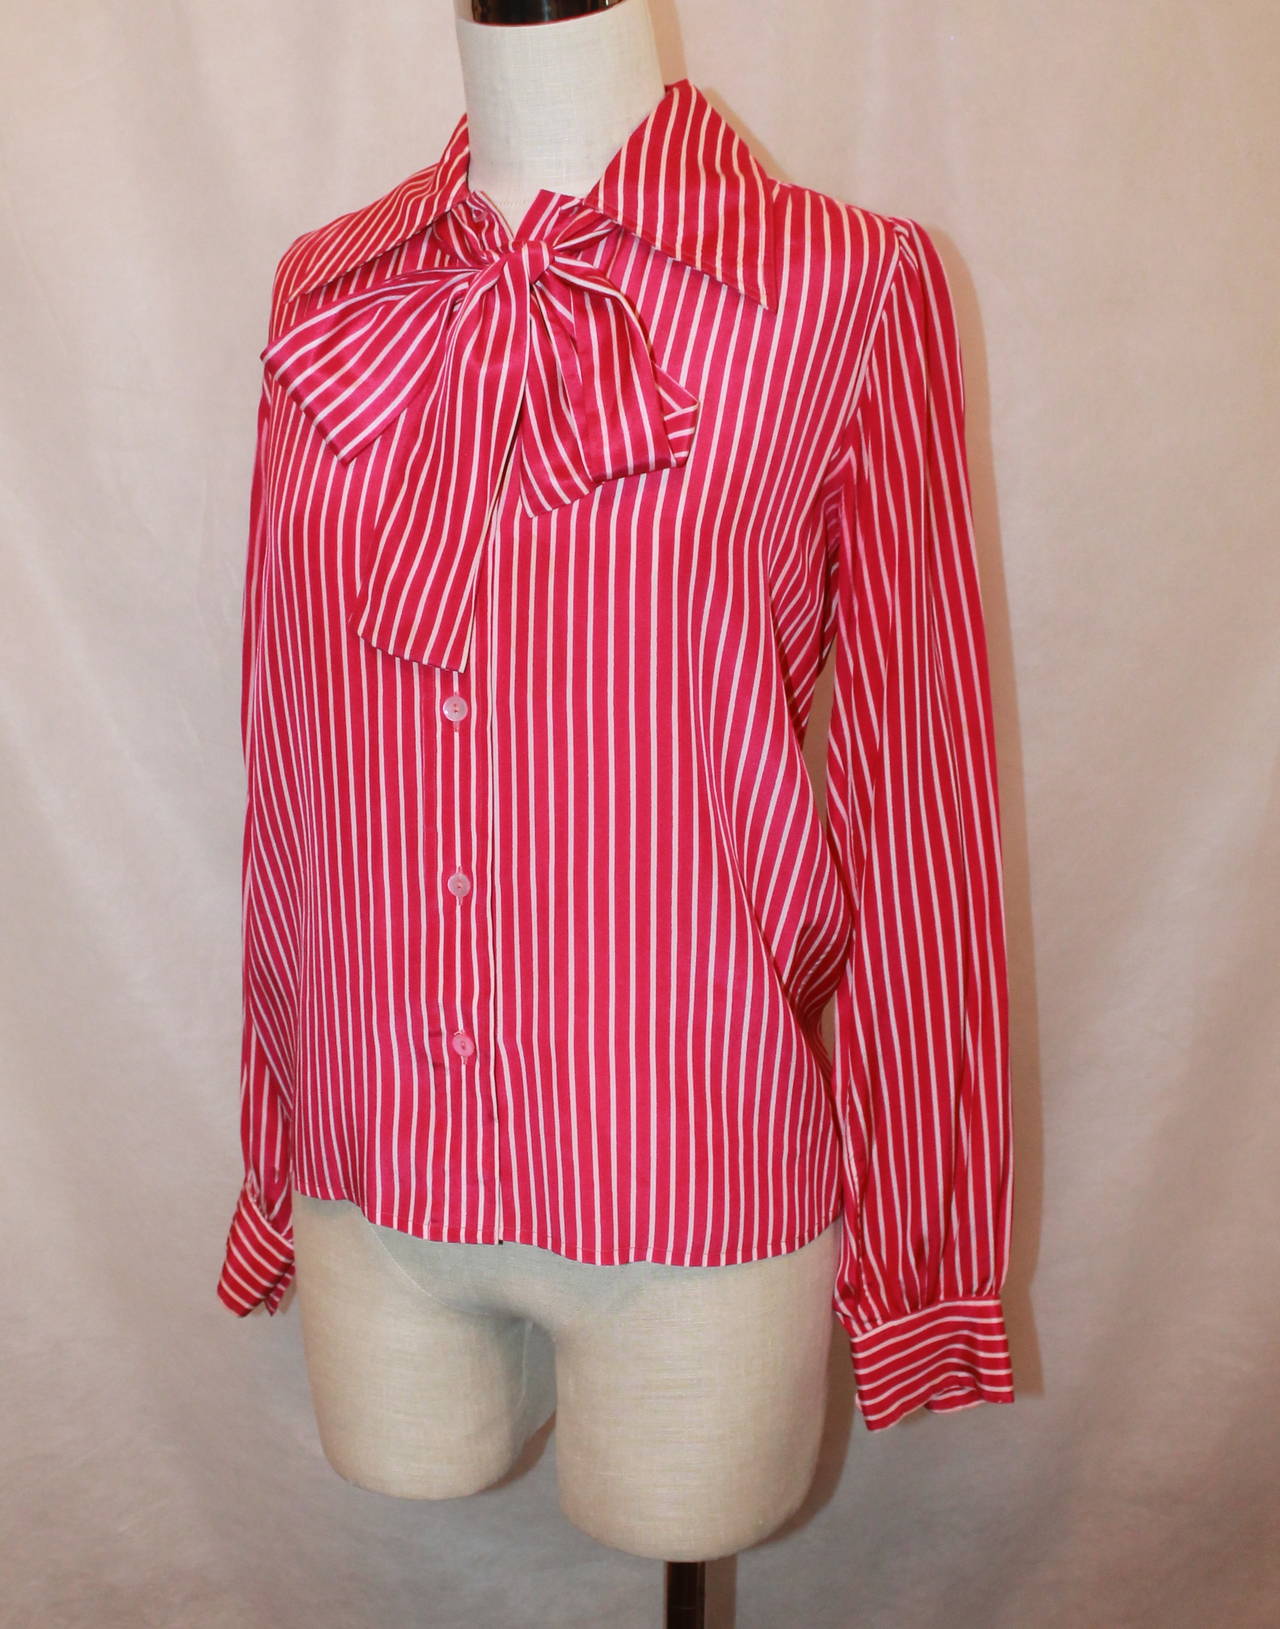 YSL 1960's Vintage Fuchsia & White Striped Long Sleeve Blouse - 38. Diese Bluse ist in sehr gutem Vintage-Zustand und hat eine abnehmbare Halskrawatte, die auch als Gürtel verwendet werden kann. Das einzige Problem ist, dass die Streifen auf den